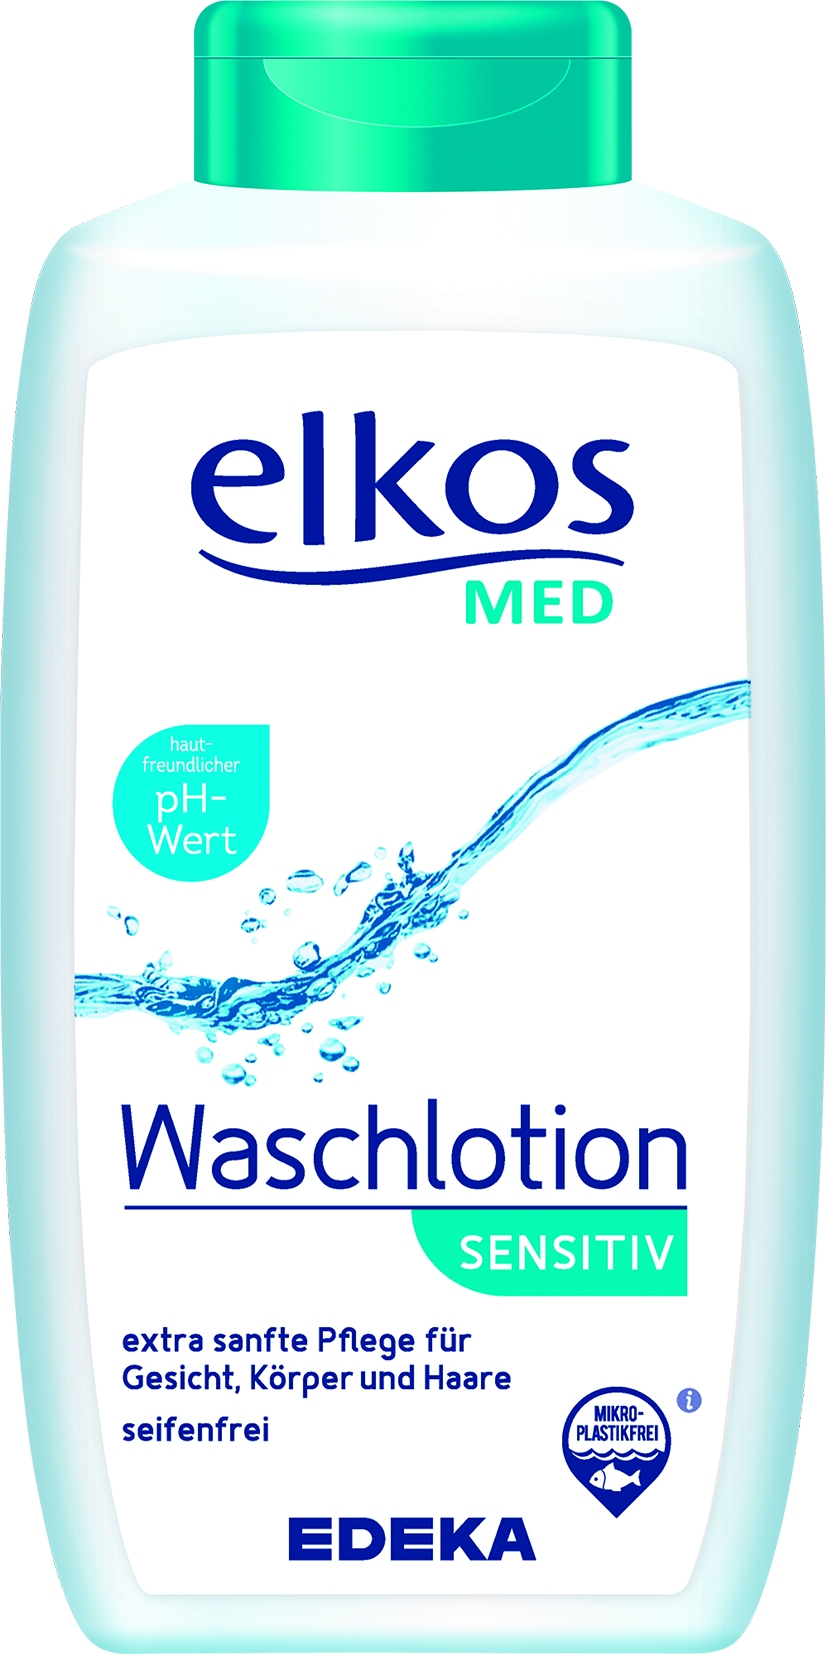 MED Waschlotion Sensitiv   